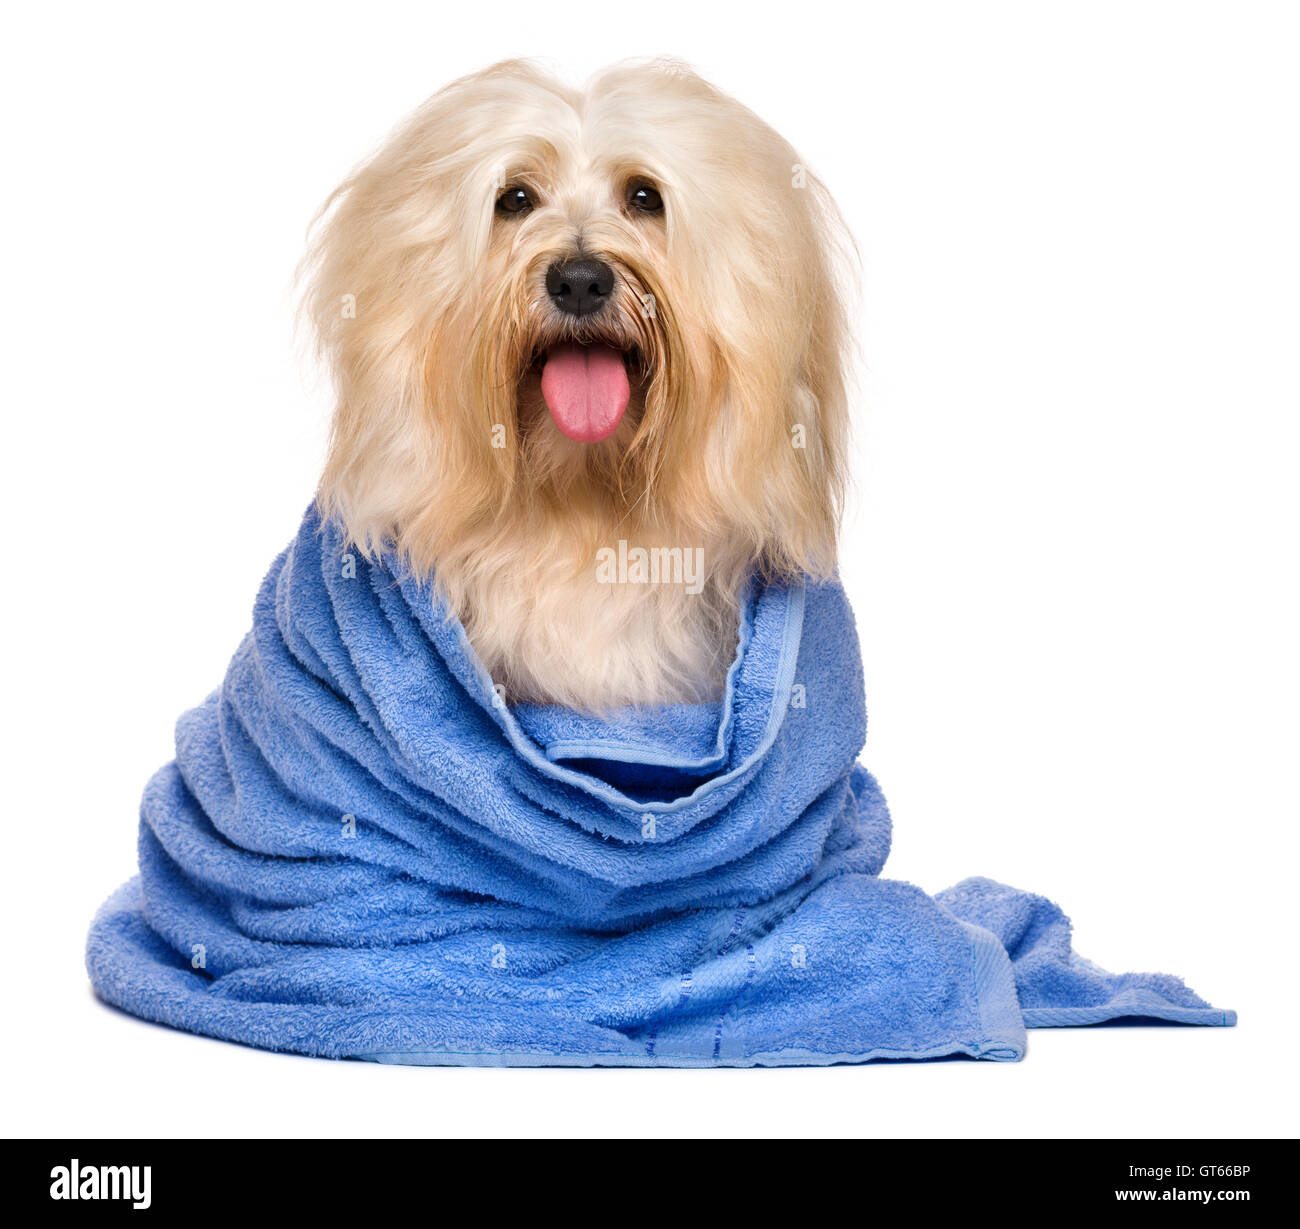 Bella bagnata rossastro cane havanese avvolto in un asciugamano blu Foto Stock